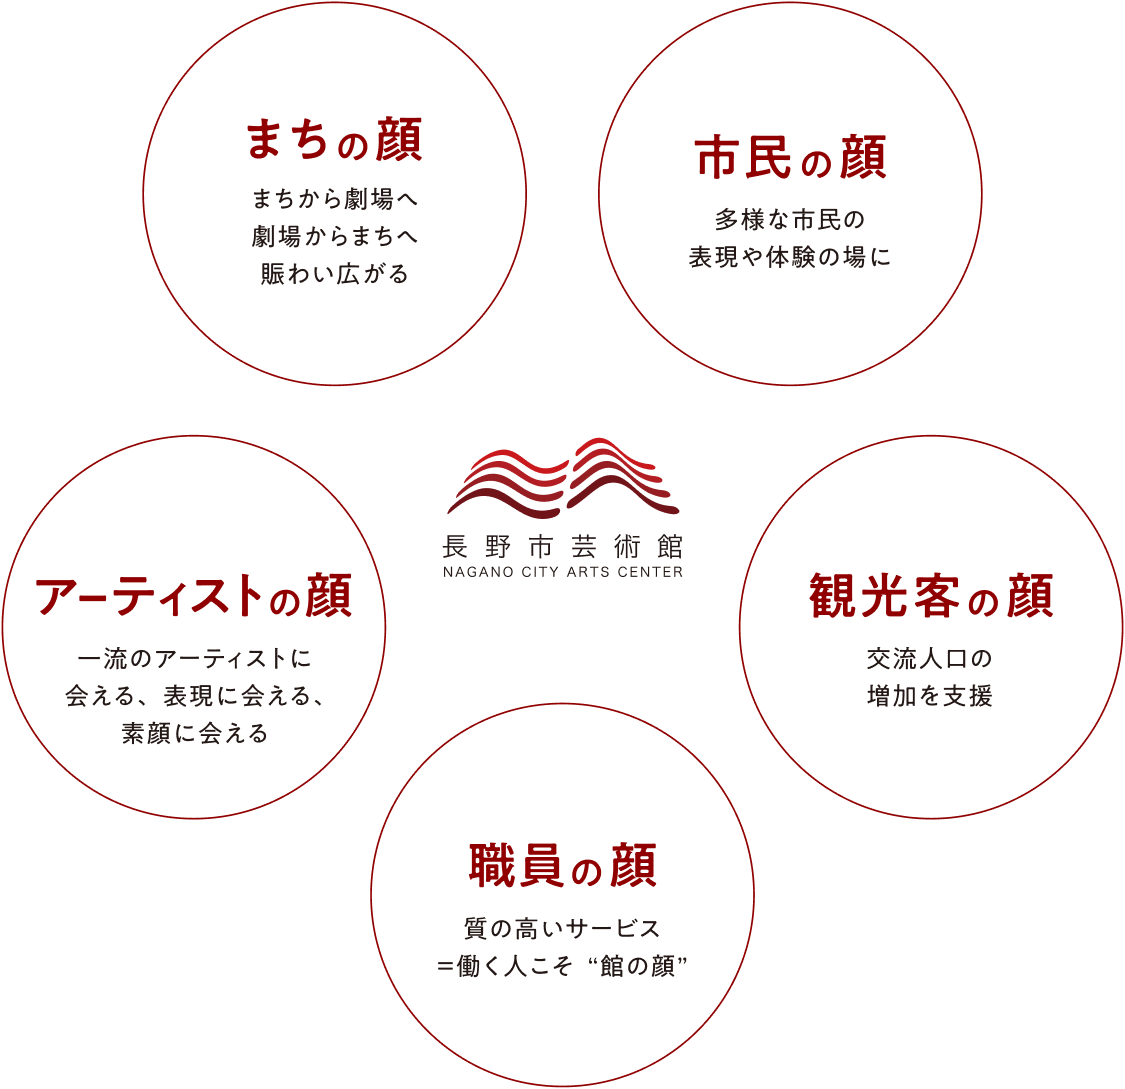 市民の顔、観光客の顔、職員の顔、アーティストの顔、まちの顔が長野市芸術館を起点に輝いて菊様を表現したチャート